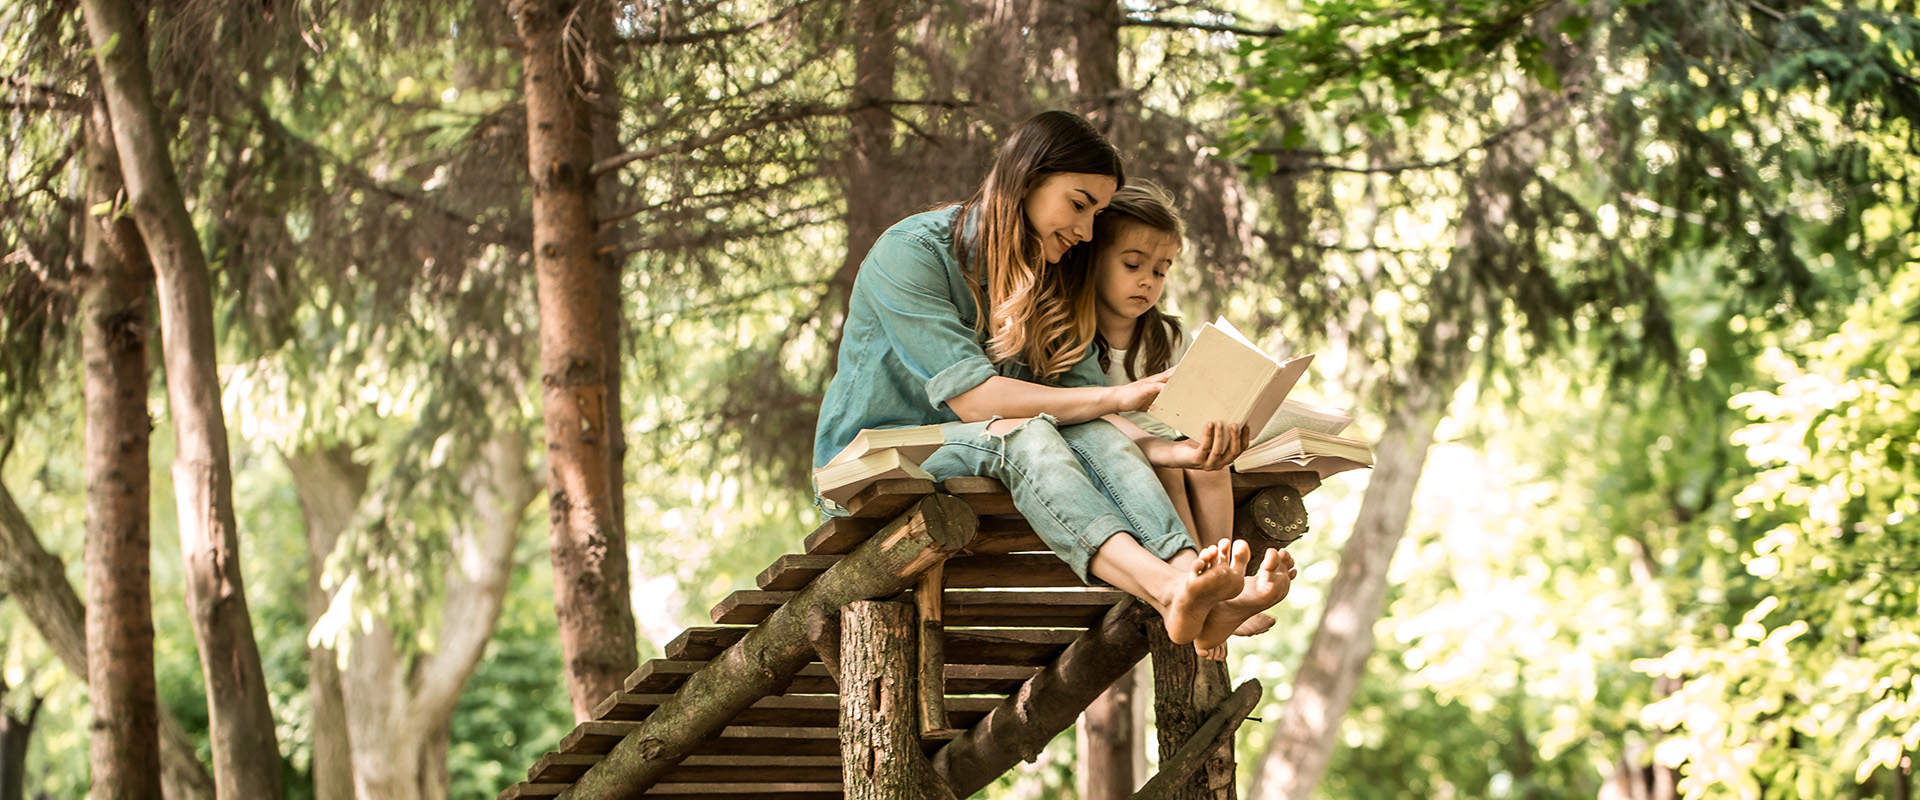 Kvinne og jente sitter på en slags brygge i skogen, leser bok, trær, solglimt gjennom trærne